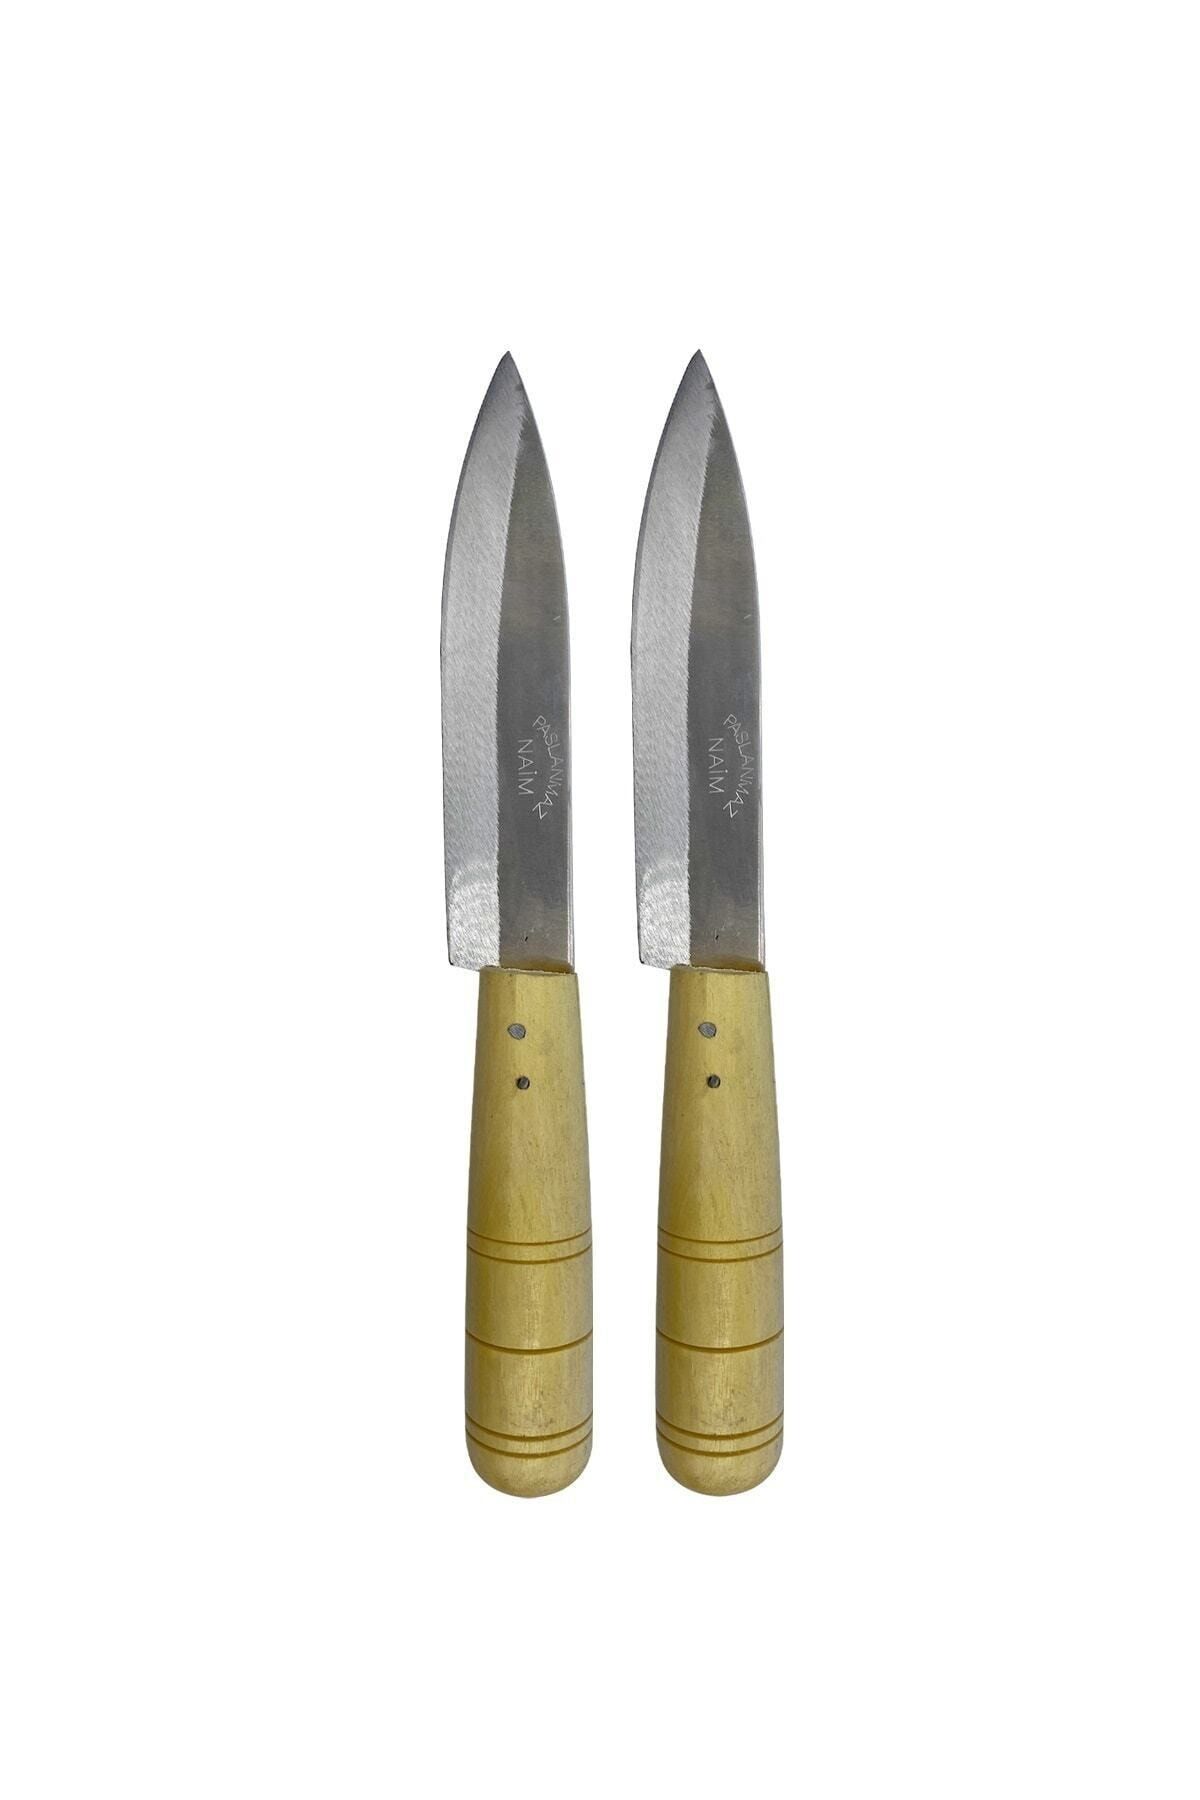 GÜZELYÜZ AVM Ahşap Saplı Mutfak Bıçağı Küçük Boy 2 Adet 18cm Keskin Kaliteli 1.sınıf Ev Bıçak